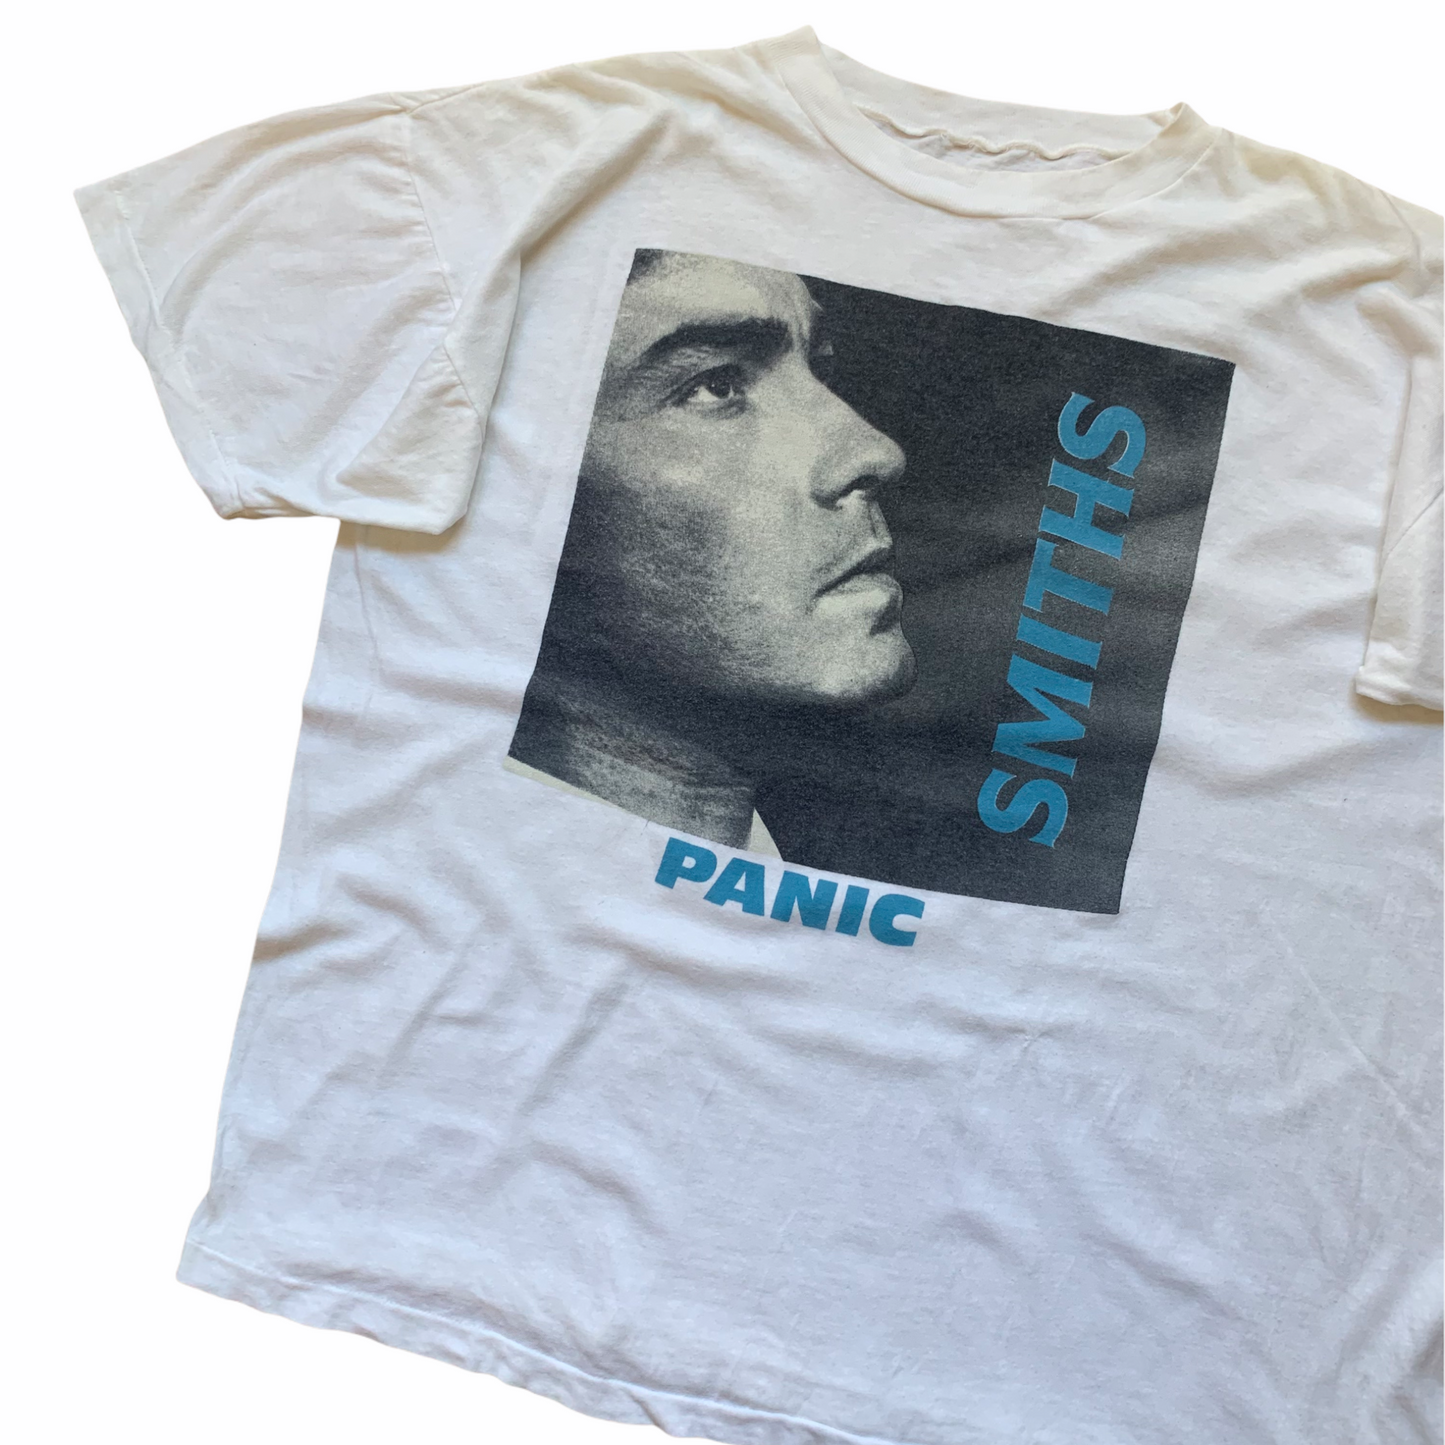 1986 The Smiths 'Panic' (L/XL)